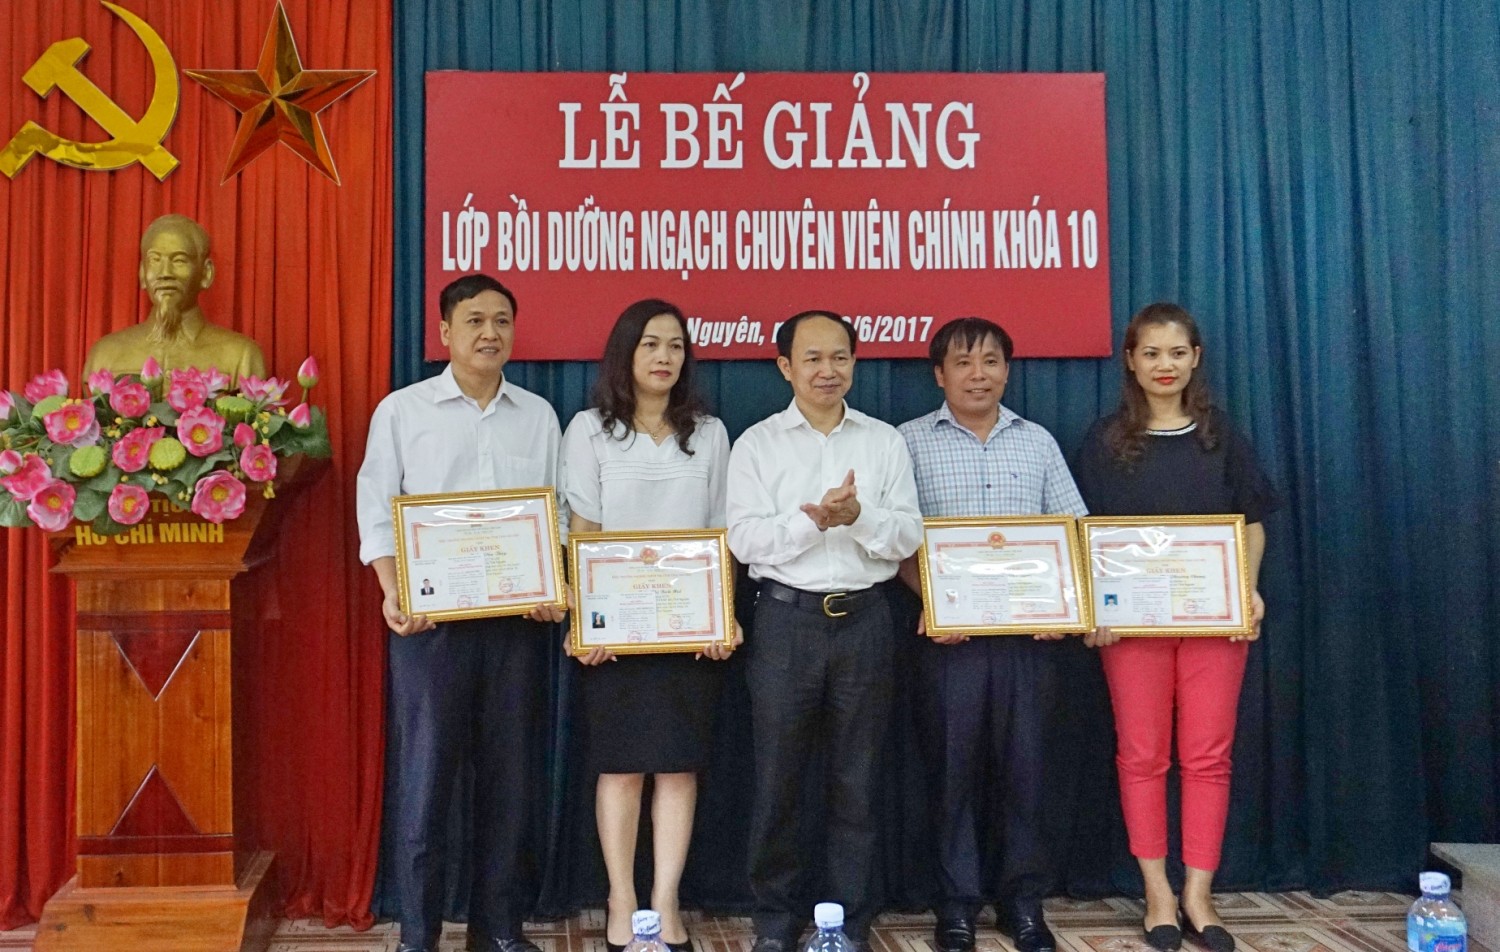 Đồng chí Phạm Minh Chuyên, Phó Hiệu trưởng Nhà trường trao chứng chỉ, giấy khen và phần thưởng cho các học viên có thành tích xuất sắc trong học tập và rèn luyện